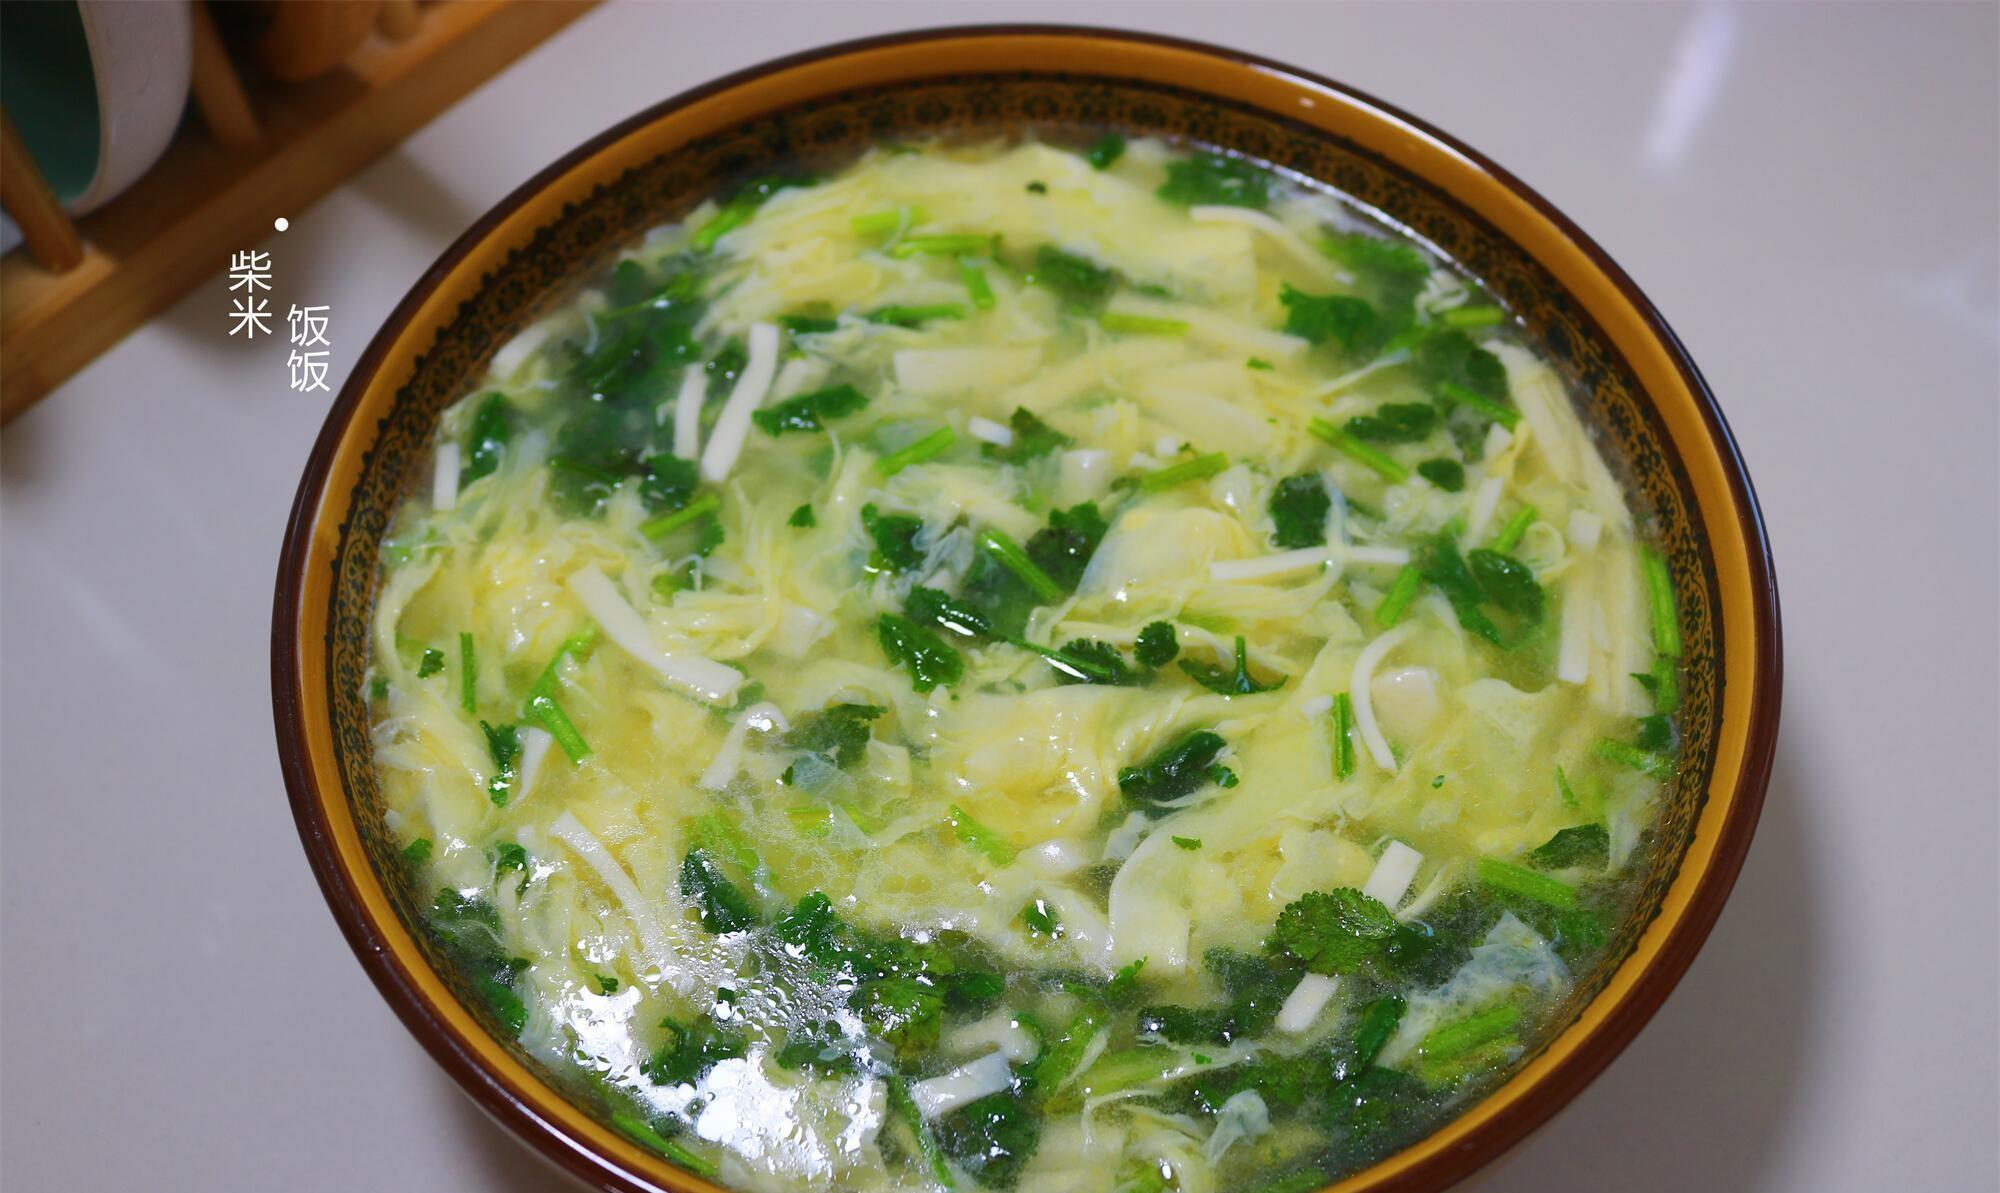 十分钟快手鸡蛋豆腐汤,食材常见,调味简单,好做又好喝